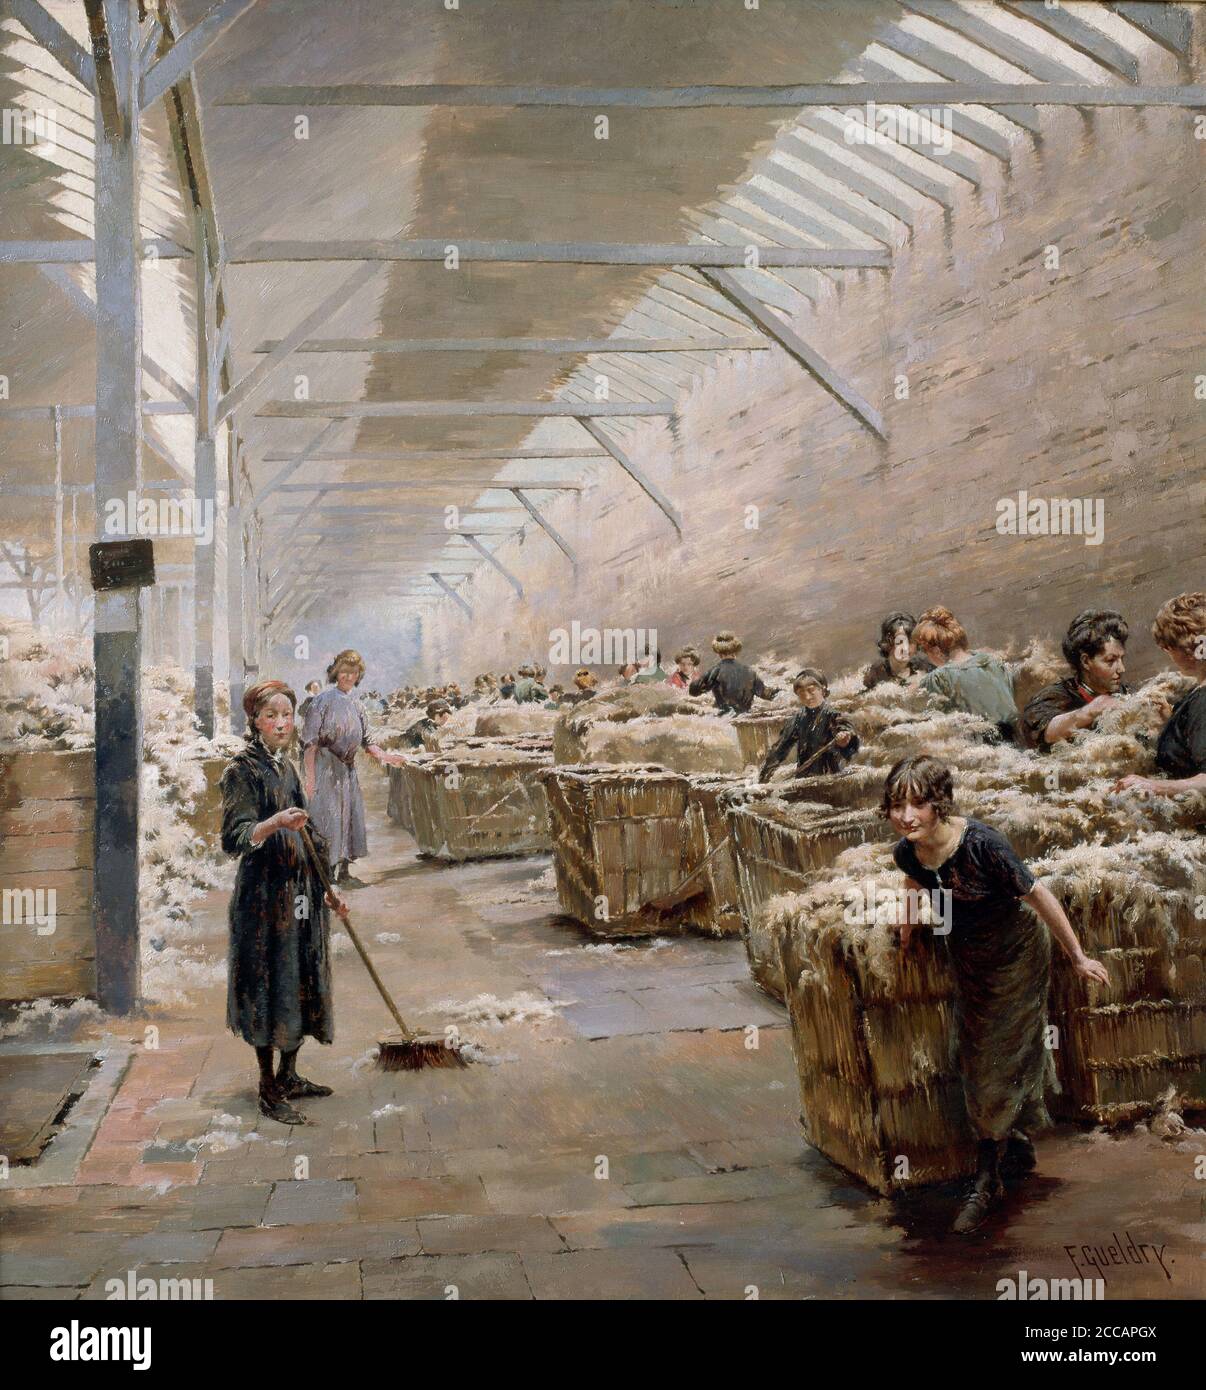 Weben, Wollsortierung. Museum: Musée de La Piscine, Roubaix. Autor: Ferdinand Joseph Gueldry. Stockfoto